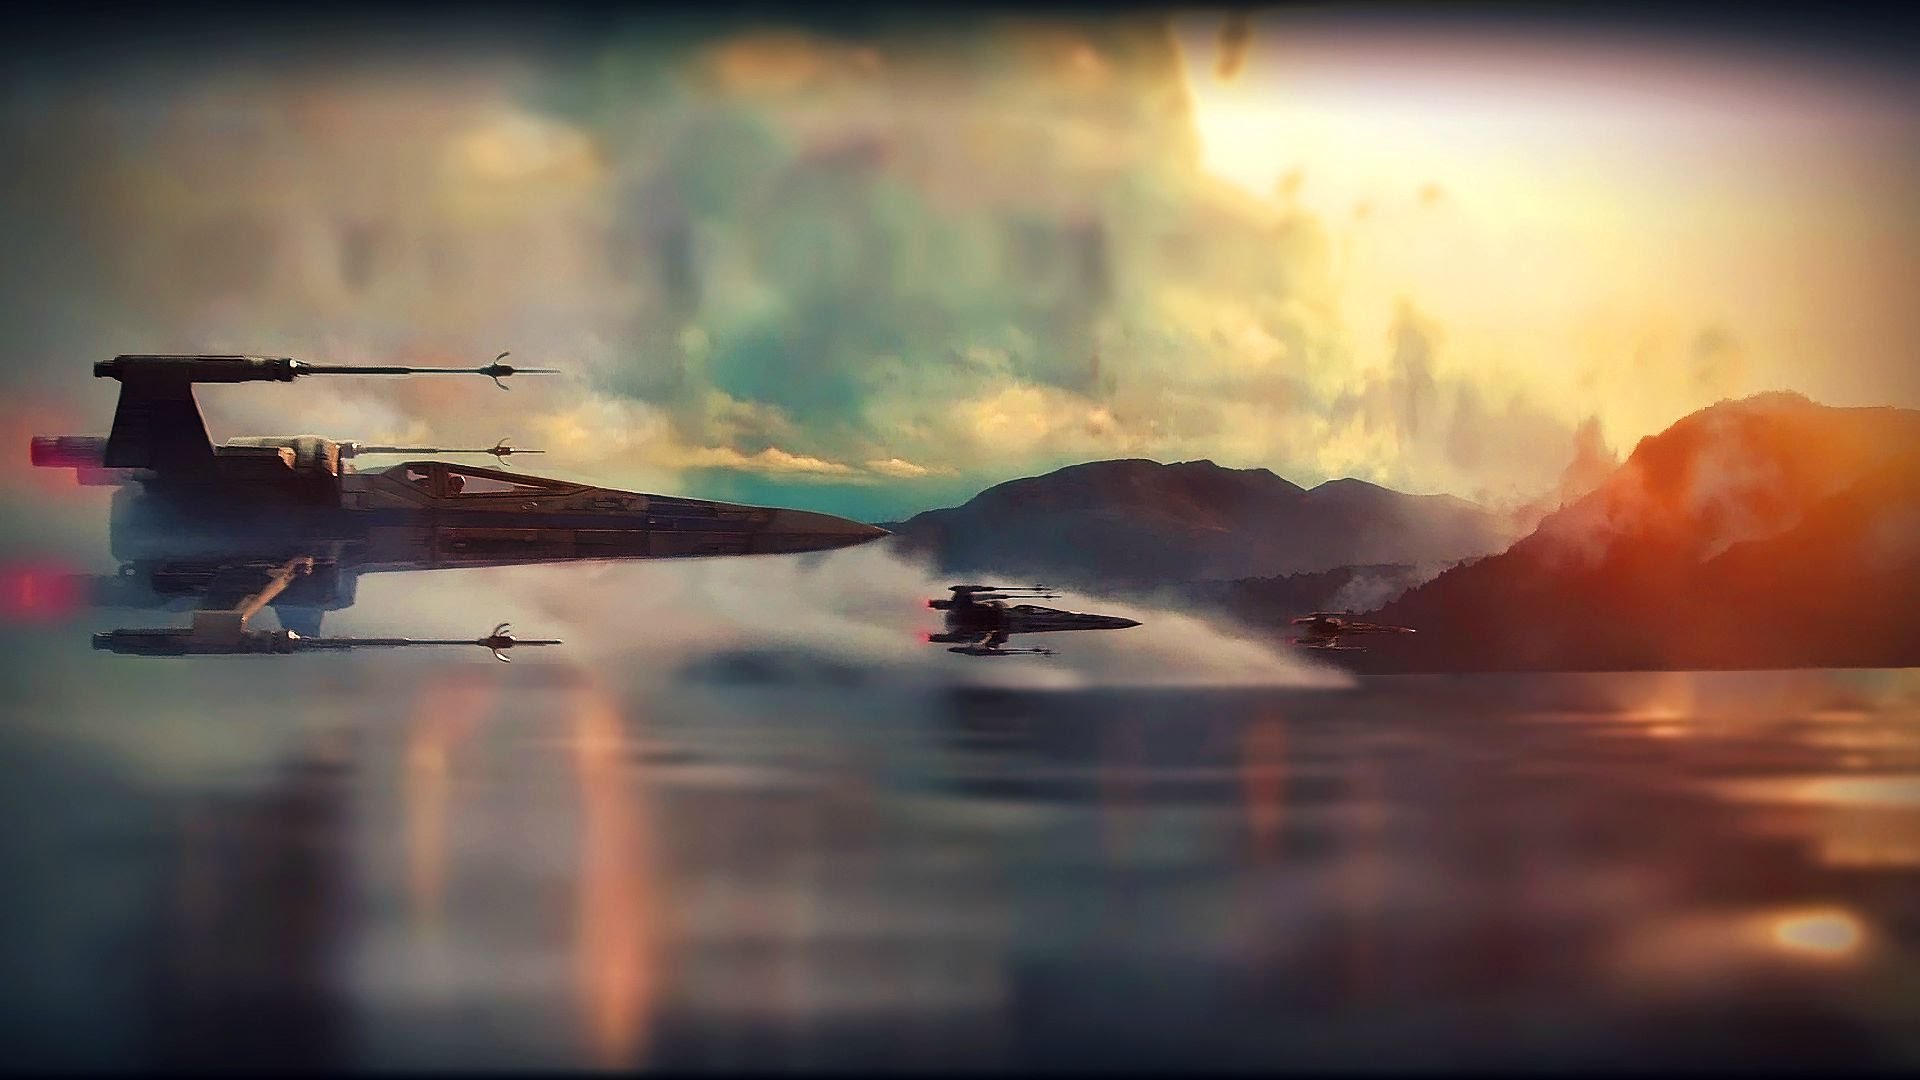 Star Wars VII' trailer en 4K, para los que lo podáis disfrutar.